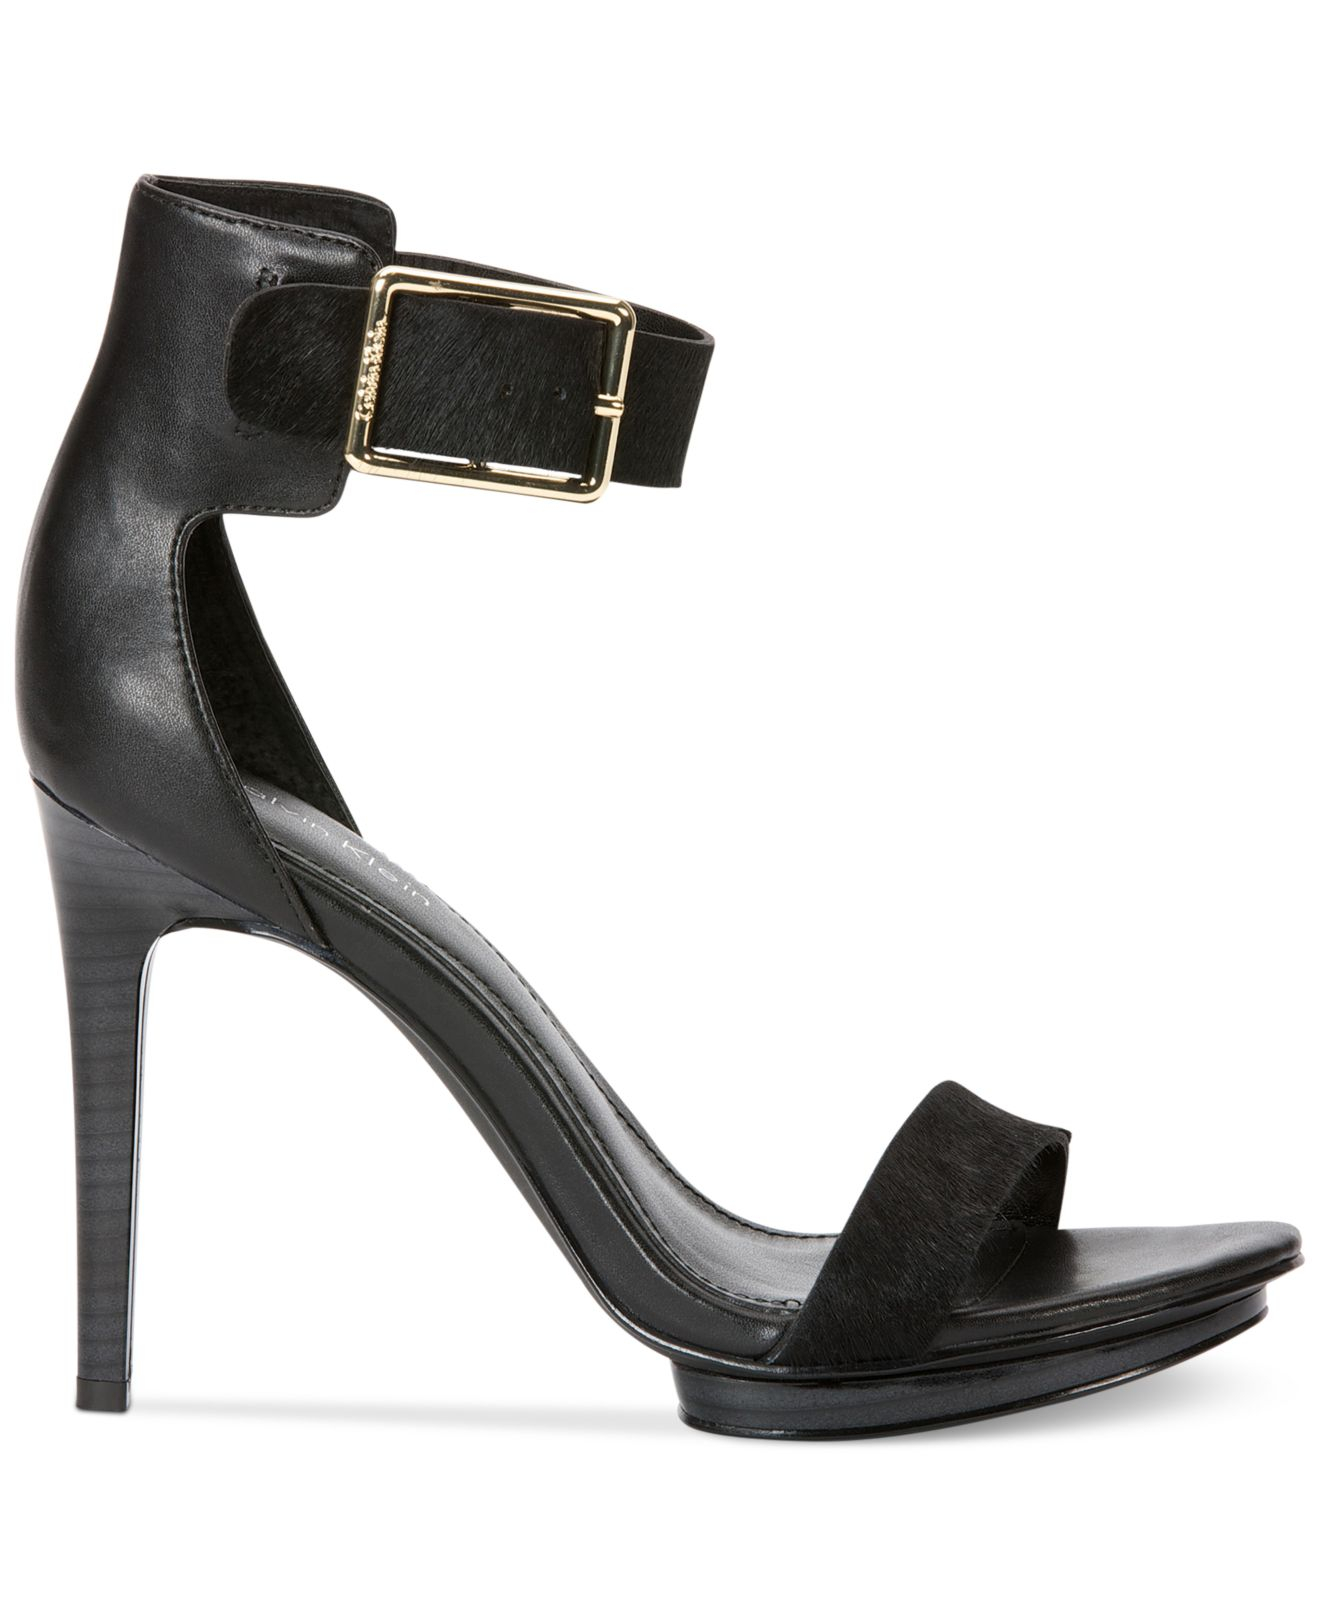 Calvin Klein Women'S Vivian High Heel Sandals in Black - Lyst